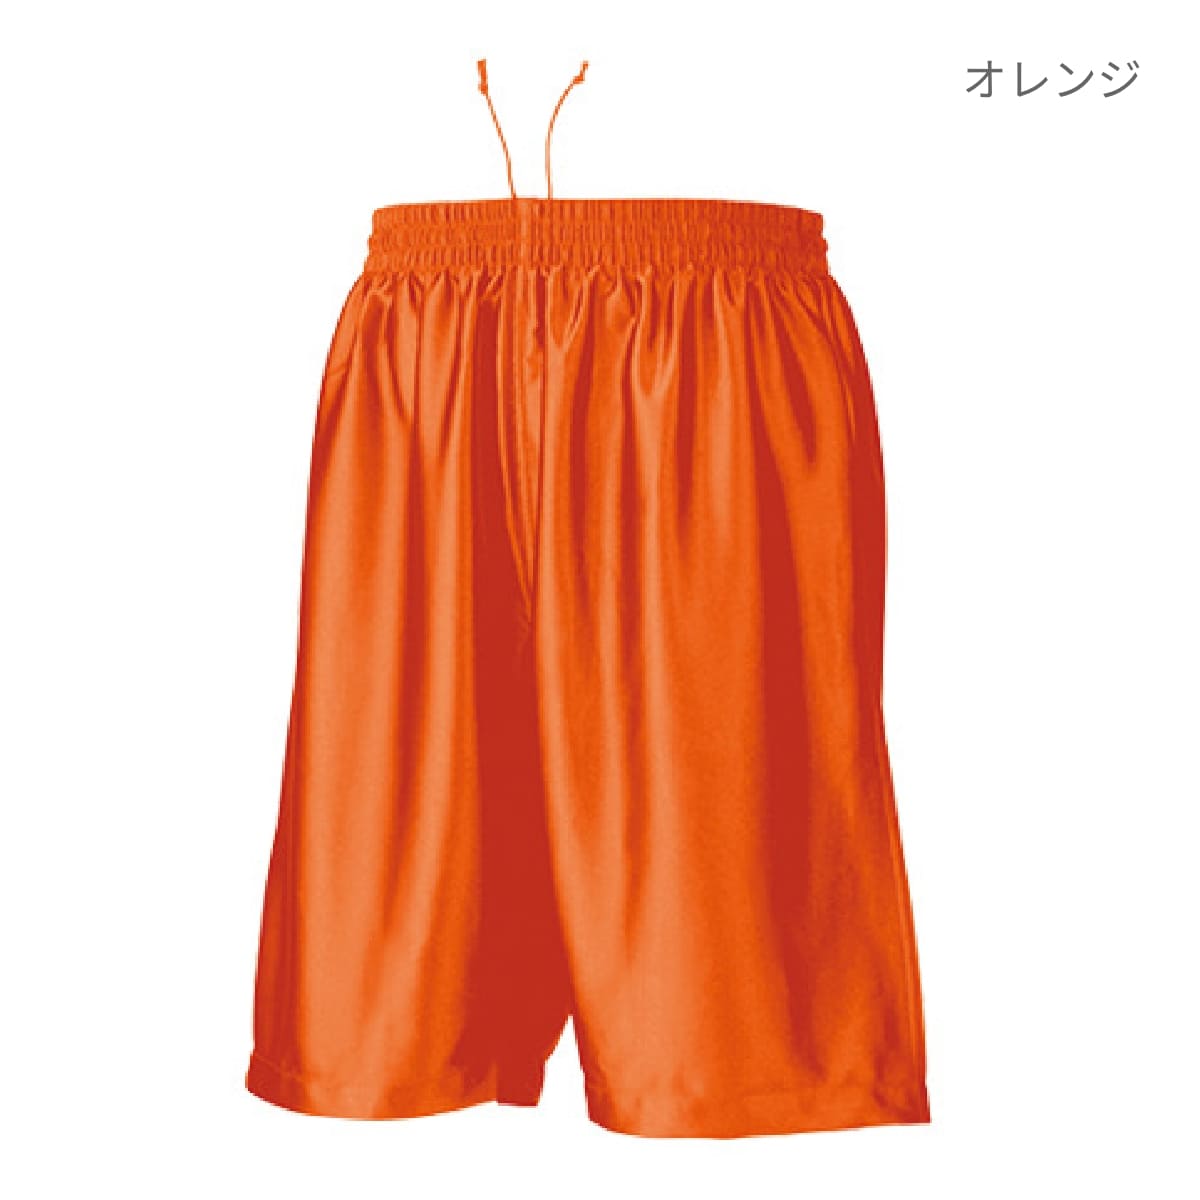 【wundou(ウンドウ)】 バスケットパンツ ロイヤルブルー S